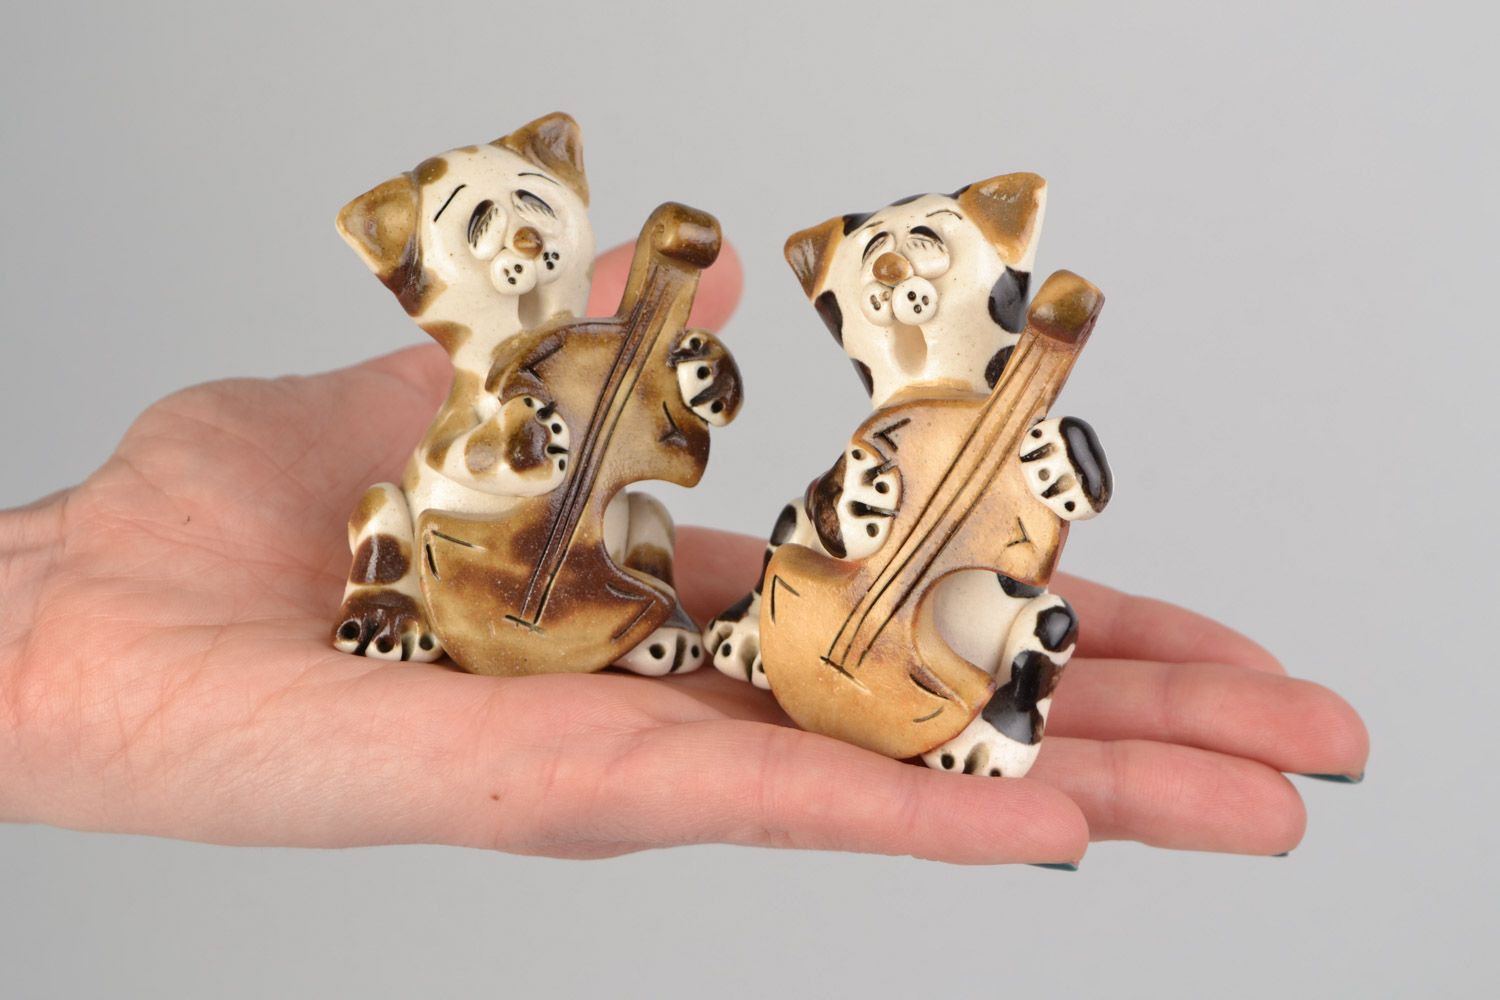 Handmade cute ceramic figurines 2 pieces funny cats for interior decor photo 2